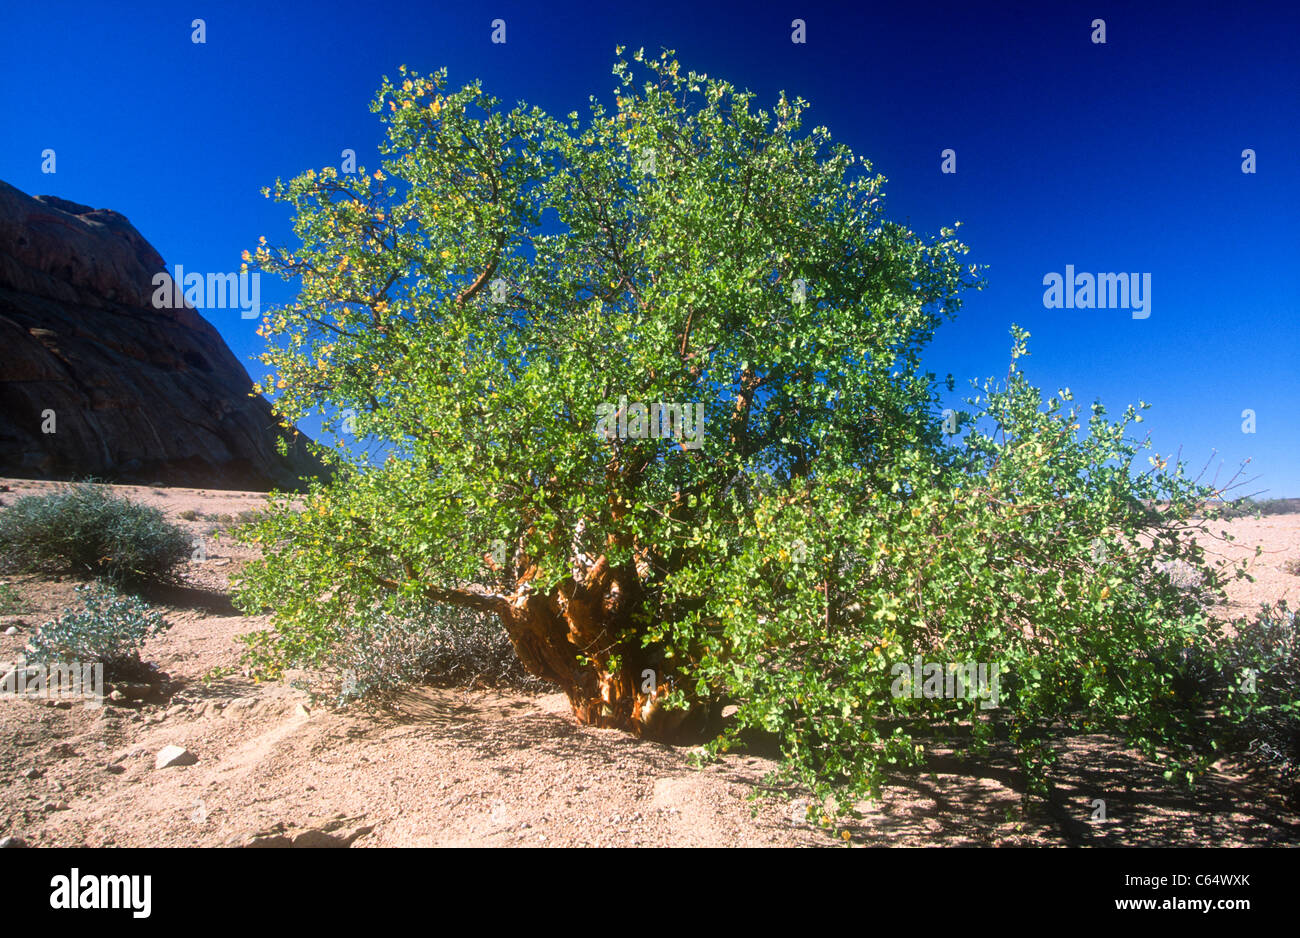 Rock commiphora tree, Commiphora saxicola, Namibia Stock Photo